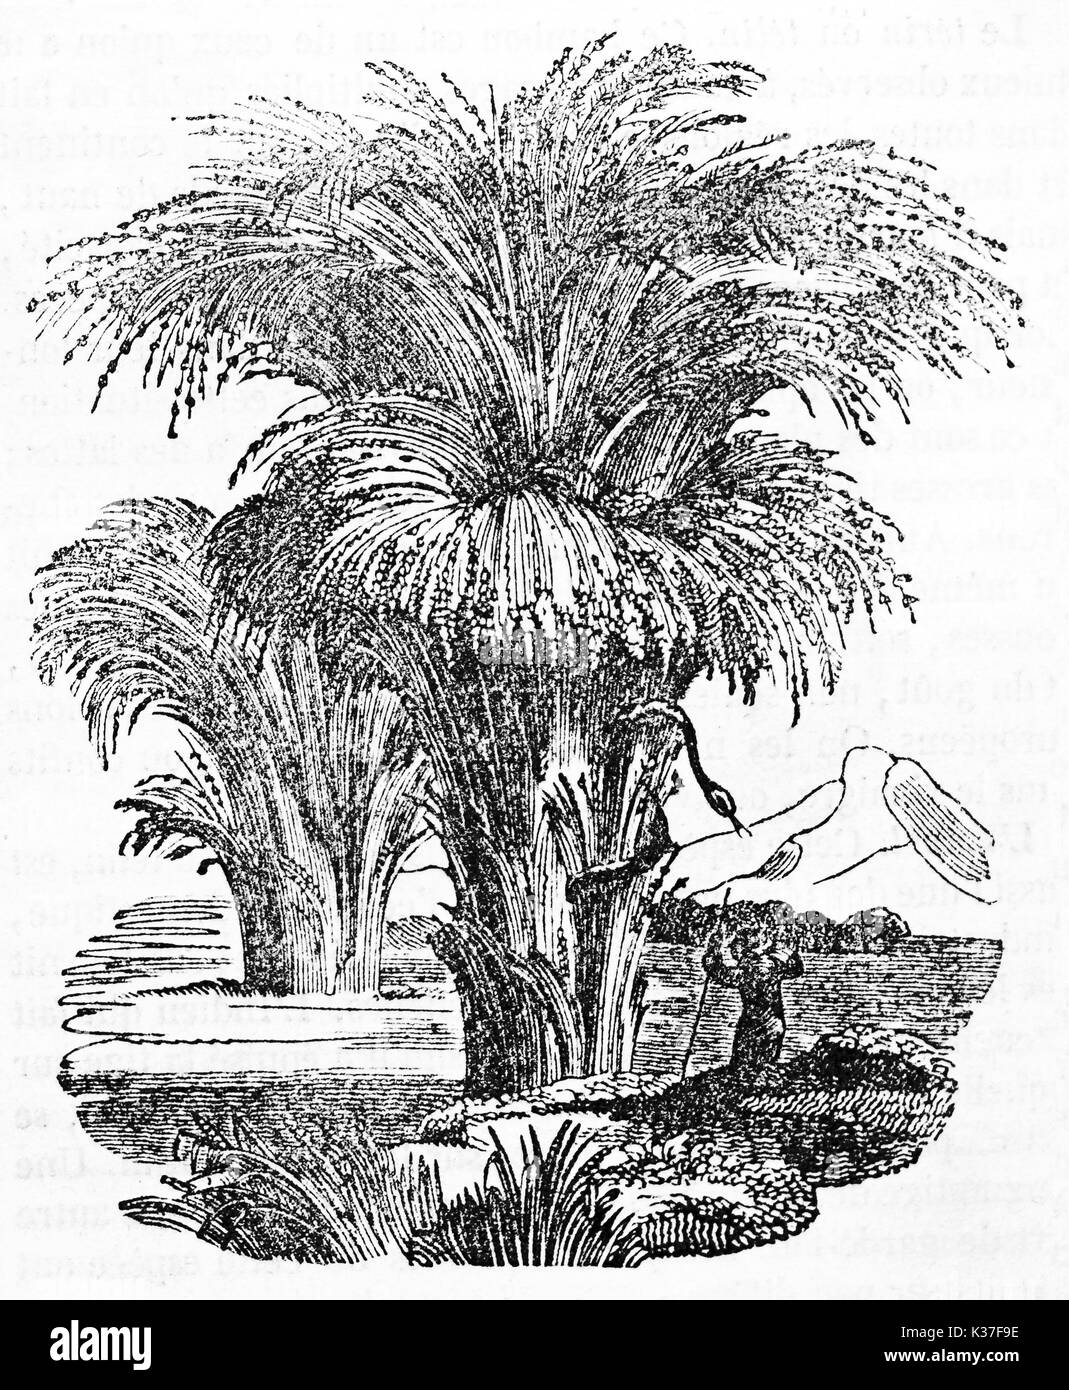 Alten botanischen Abbildung von zwei üppige Bambus Sträucher in der Natur. Von unbekannter Autor auf Magasin Pittoresque Paris 1834 veröffentlicht. Stockfoto